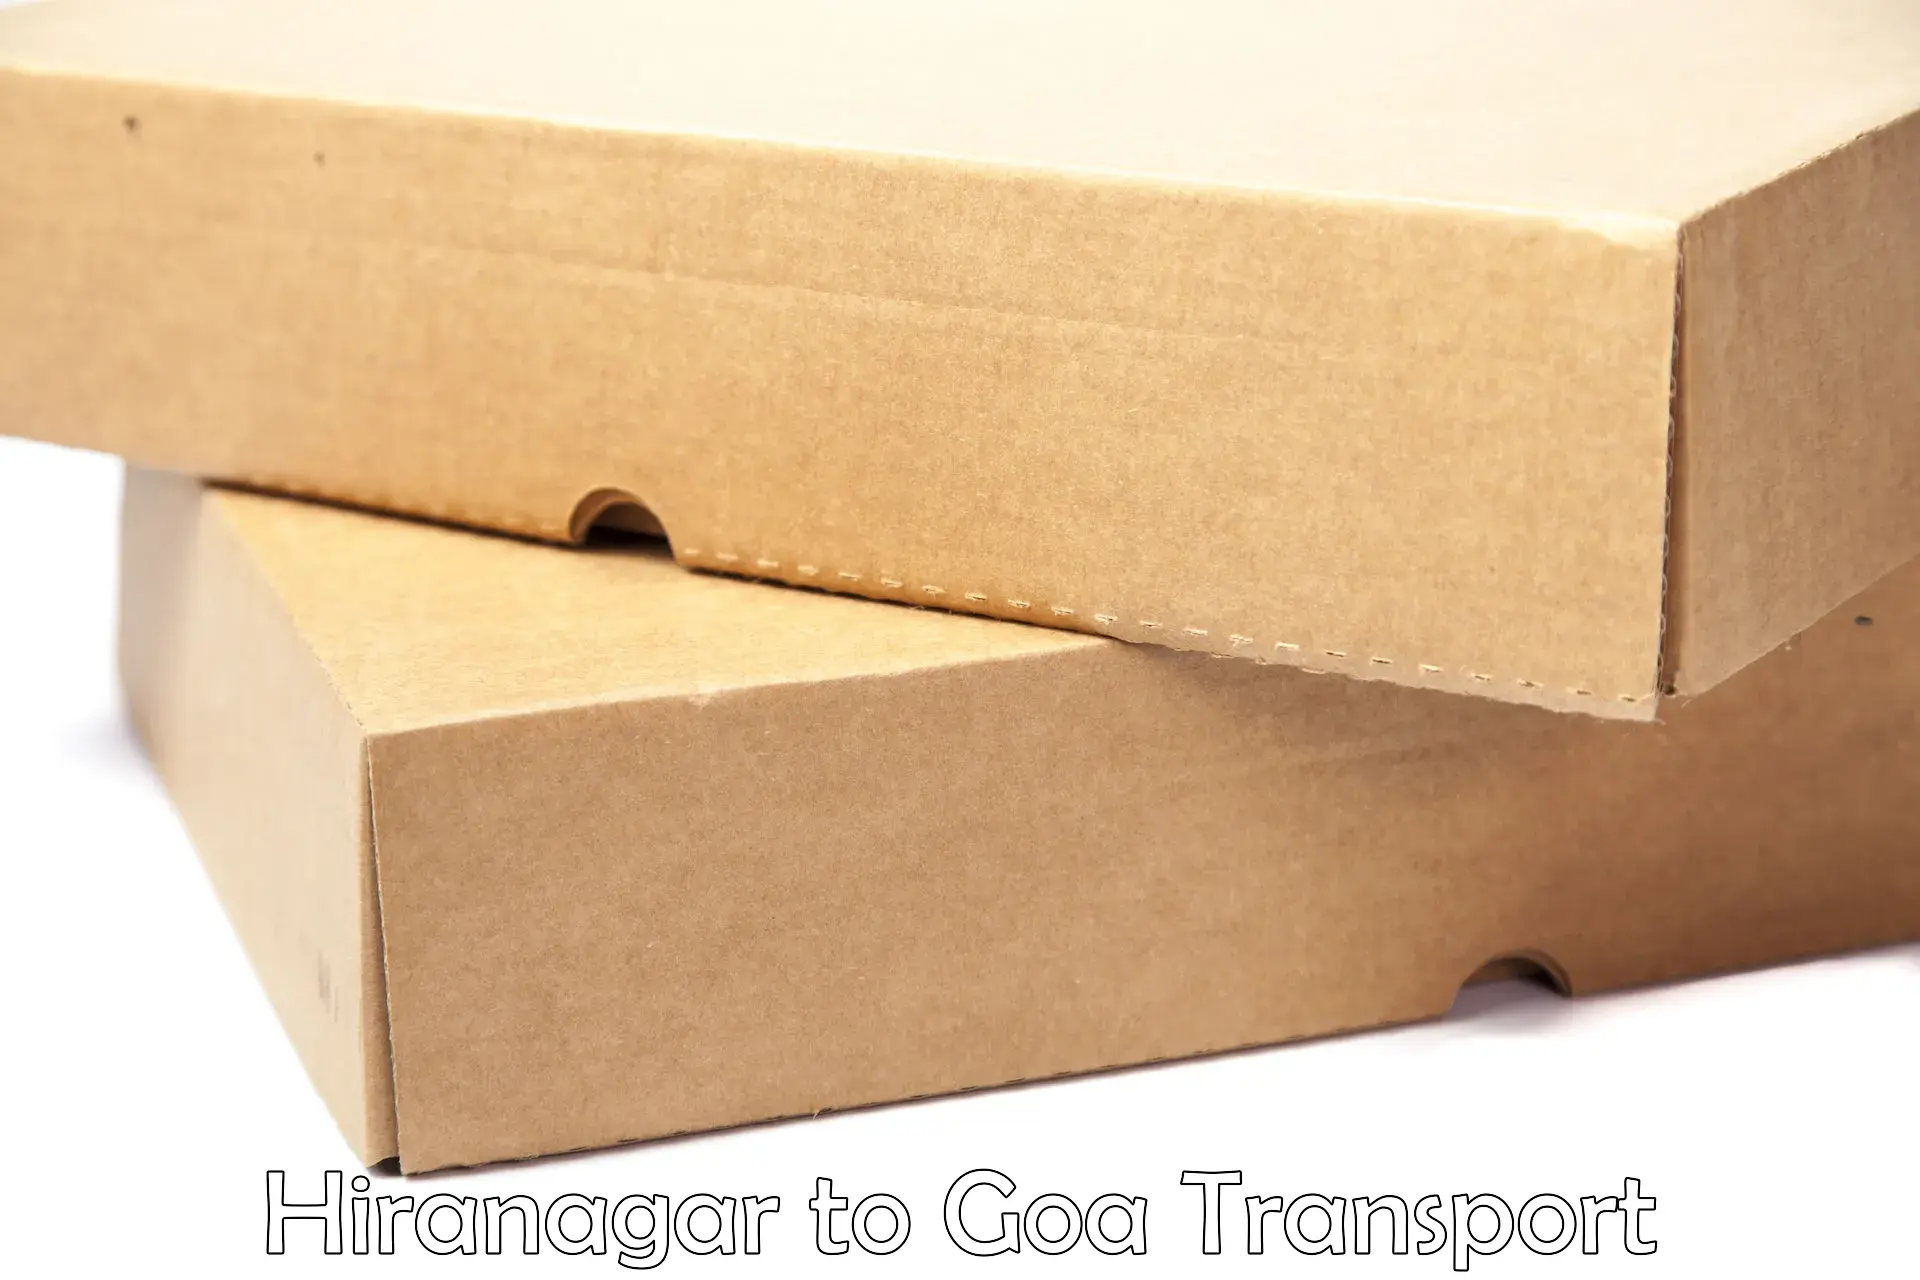 Cargo transportation services Hiranagar to IIT Goa